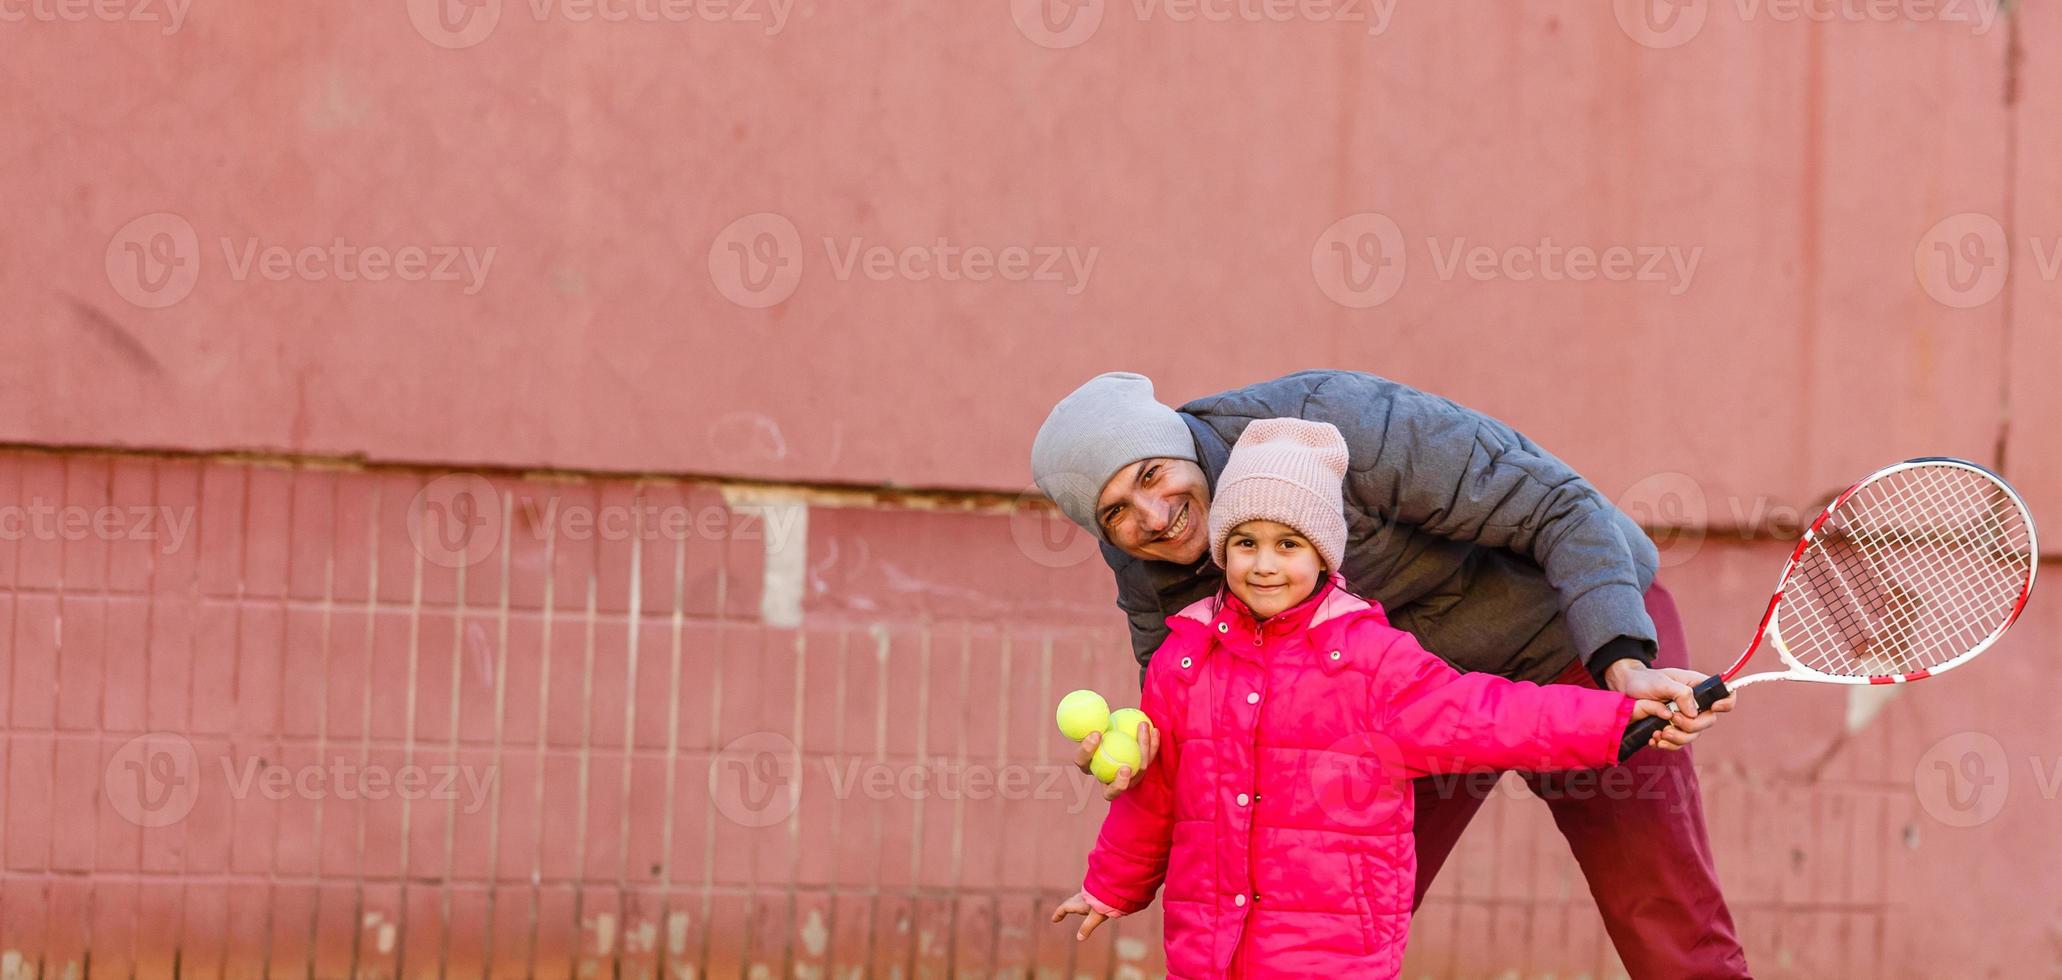 actief familie spelen tennis Aan rechtbank foto